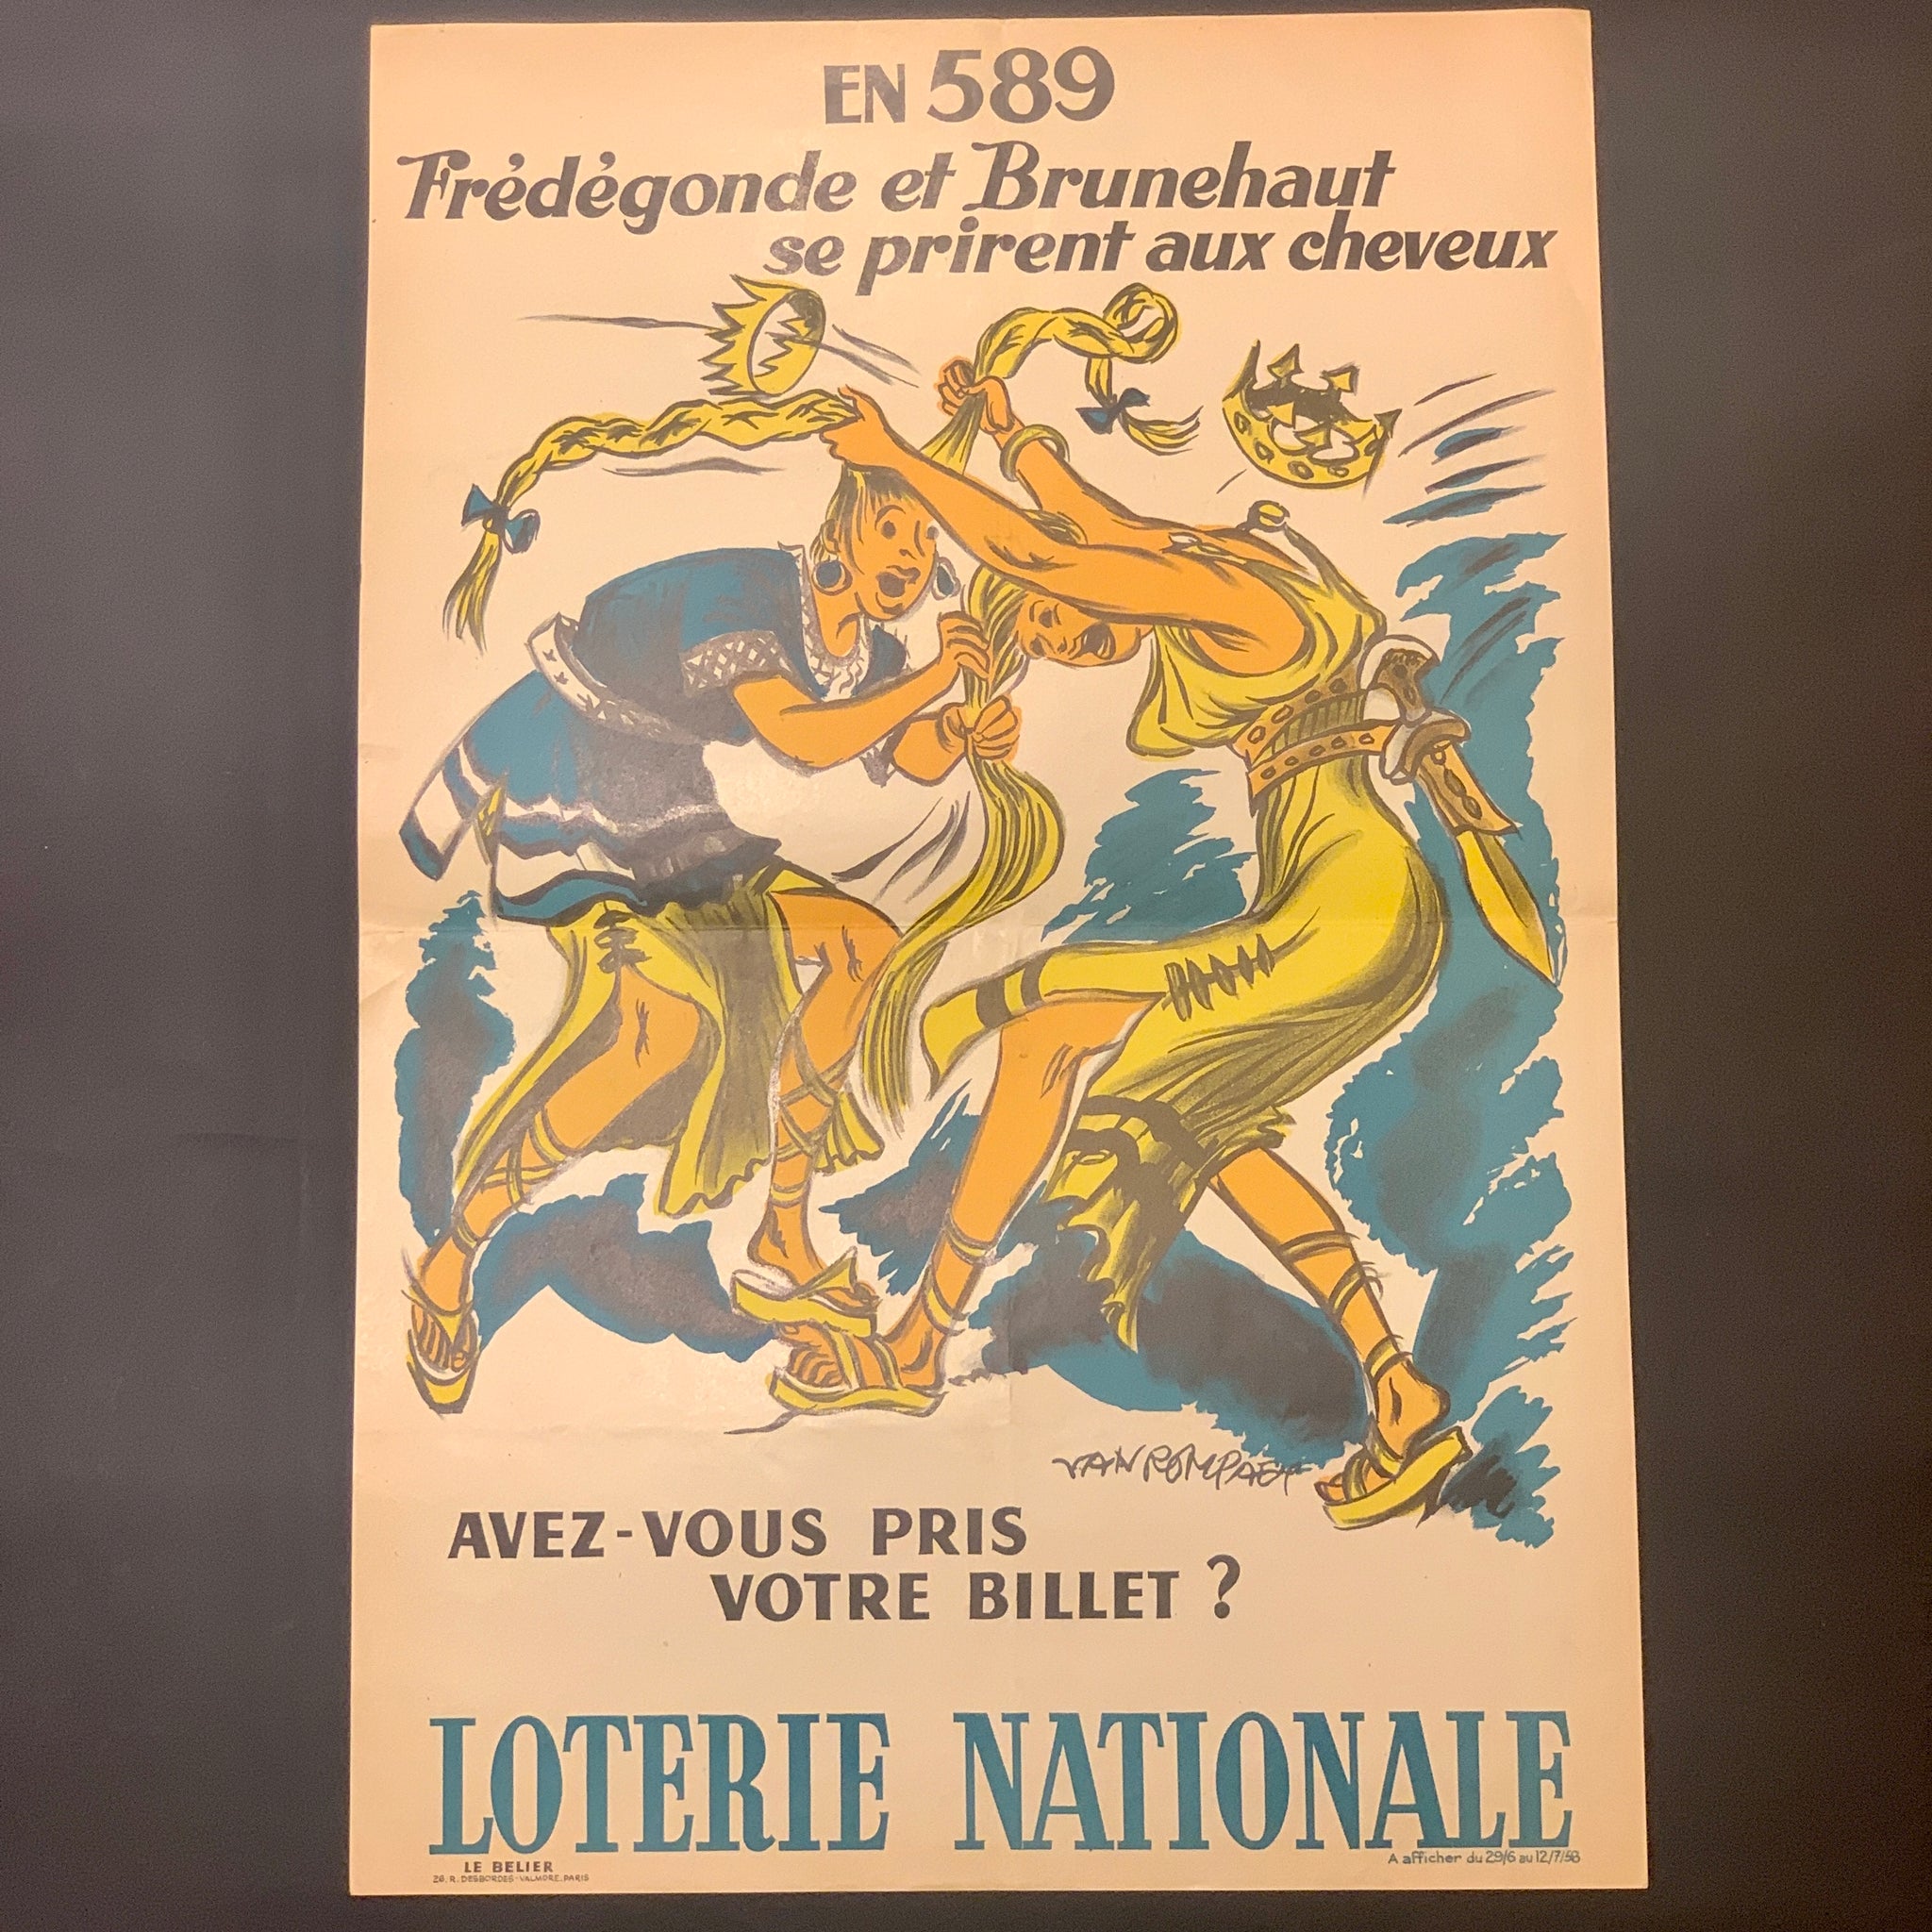 Fransk Van Rompaey “Loterie Nationale”plakat, fra 1958.